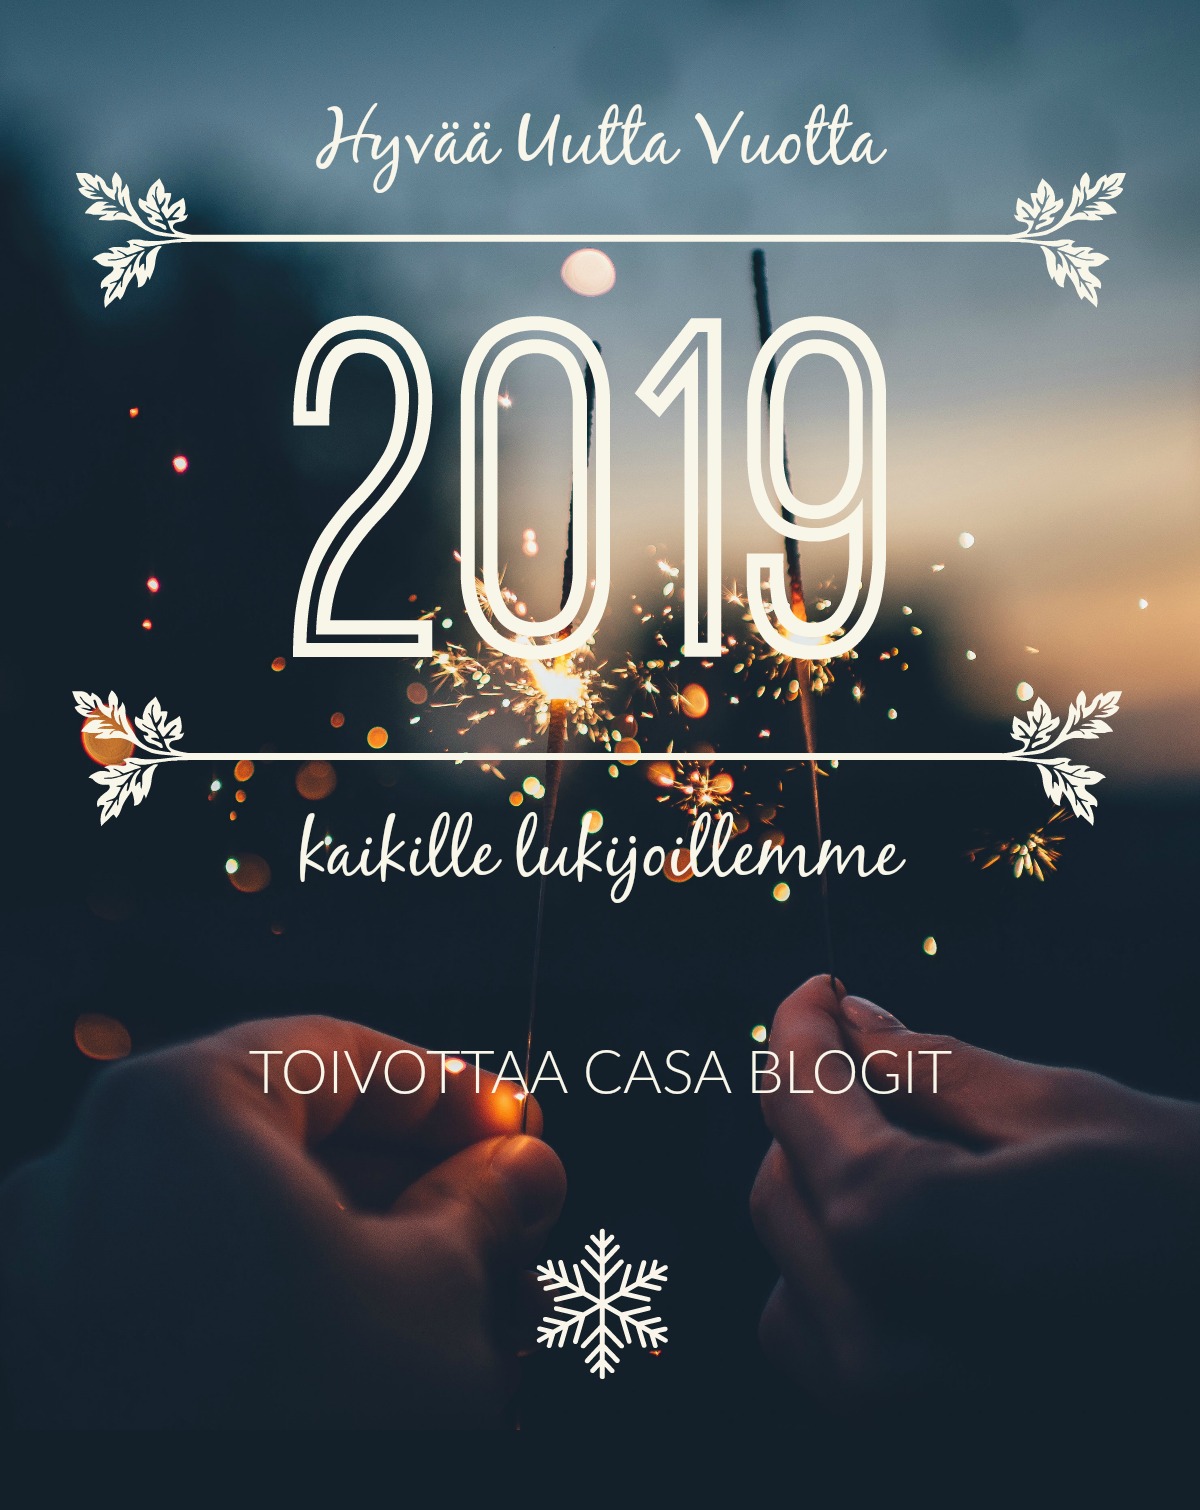 Hyvaa uutta Vuotta 2019 casa